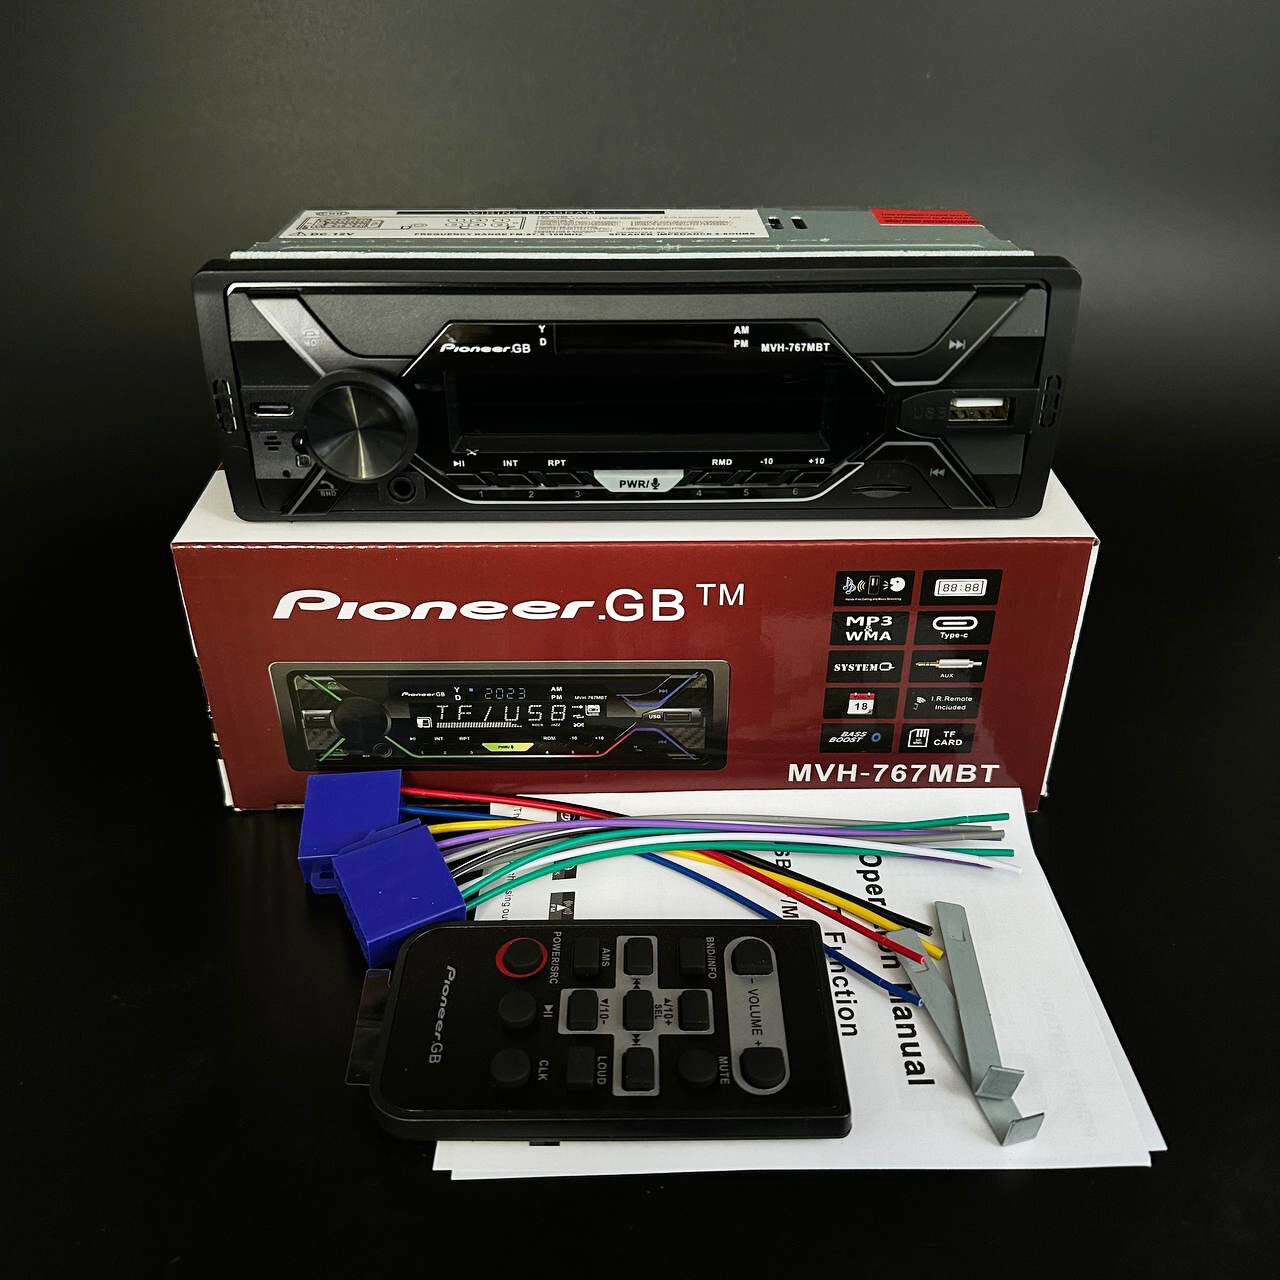 Автомагнитола в авто Pioneer.GB 1 DIN / Автомобильная магнитола с Bluetooth в машину / Магнитофон Пионер с USB, AUX для автомобиля с подсветкой + пульт ДУ